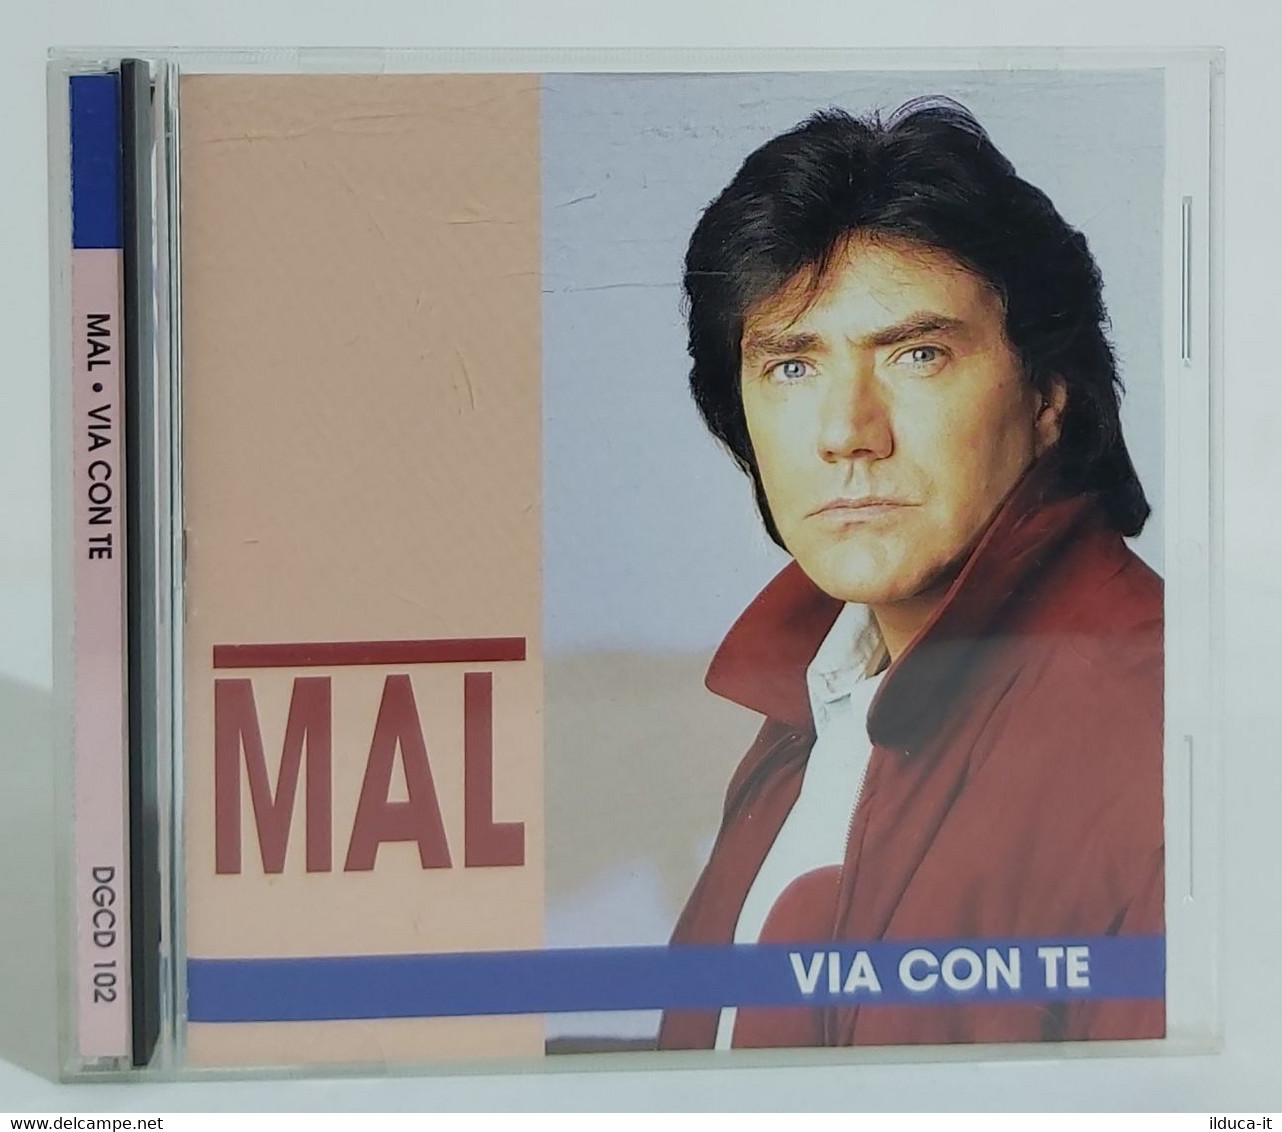 I102309 CD - Mal - Via Con Te - Duck Record 1994 - Other - Italian Music